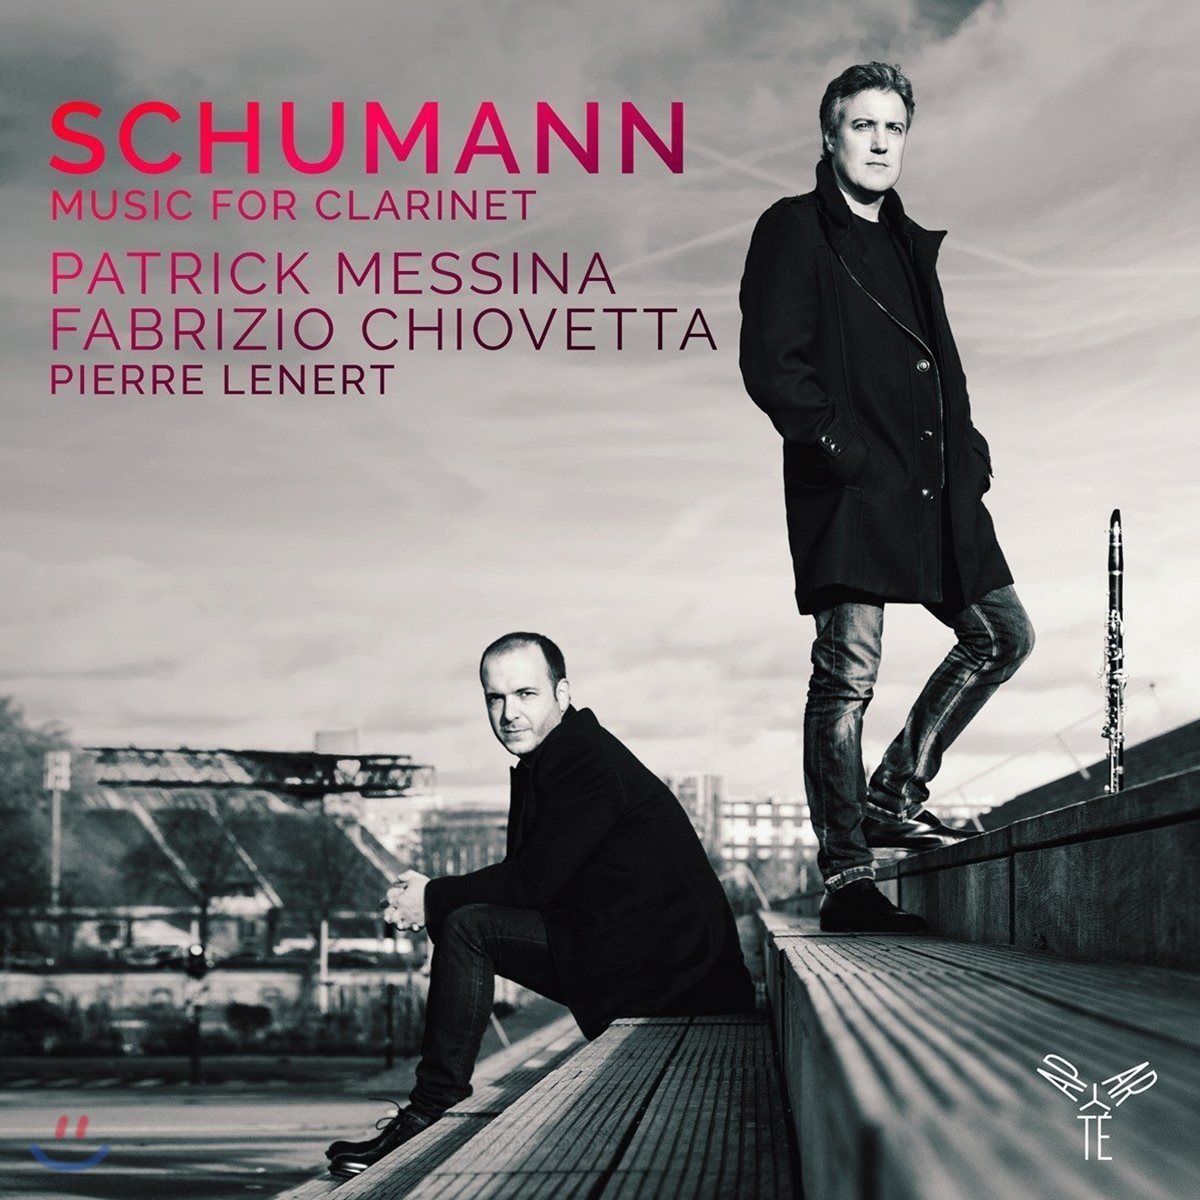 Patrick Messina / Fabrizio Chiovetta 슈만: 클라리넷을 위한 음악 - 패트릭 메시나, 파브리지오 키오베타 (Schumann: Music for Clarinet)